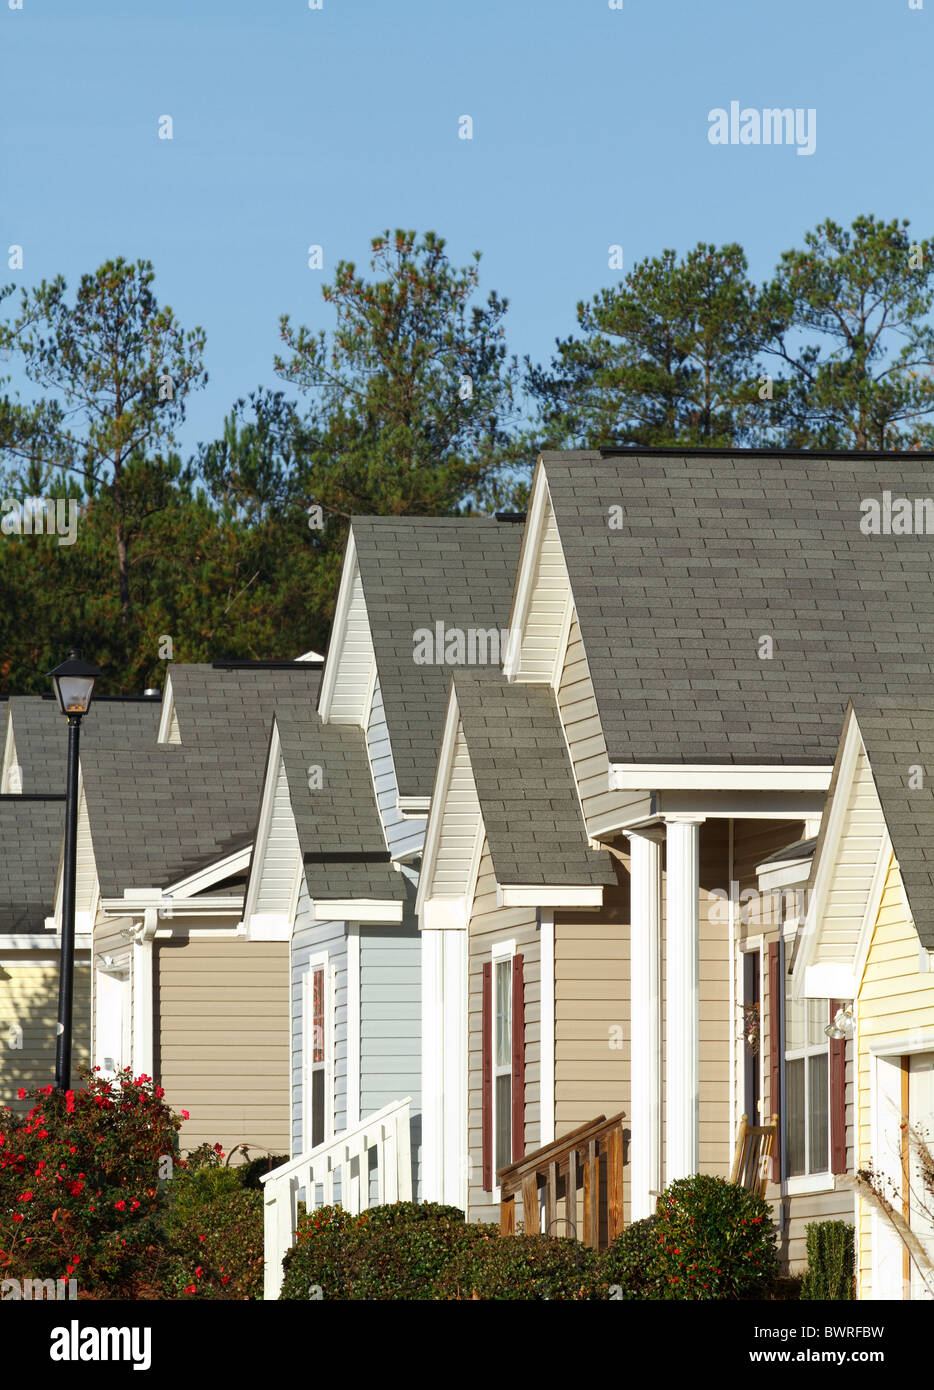 Typische moderne Mittelklasse-Vorort befindet sich in einer Wohnsiedlung in den USA in der Herbst-Saison. Stockfoto